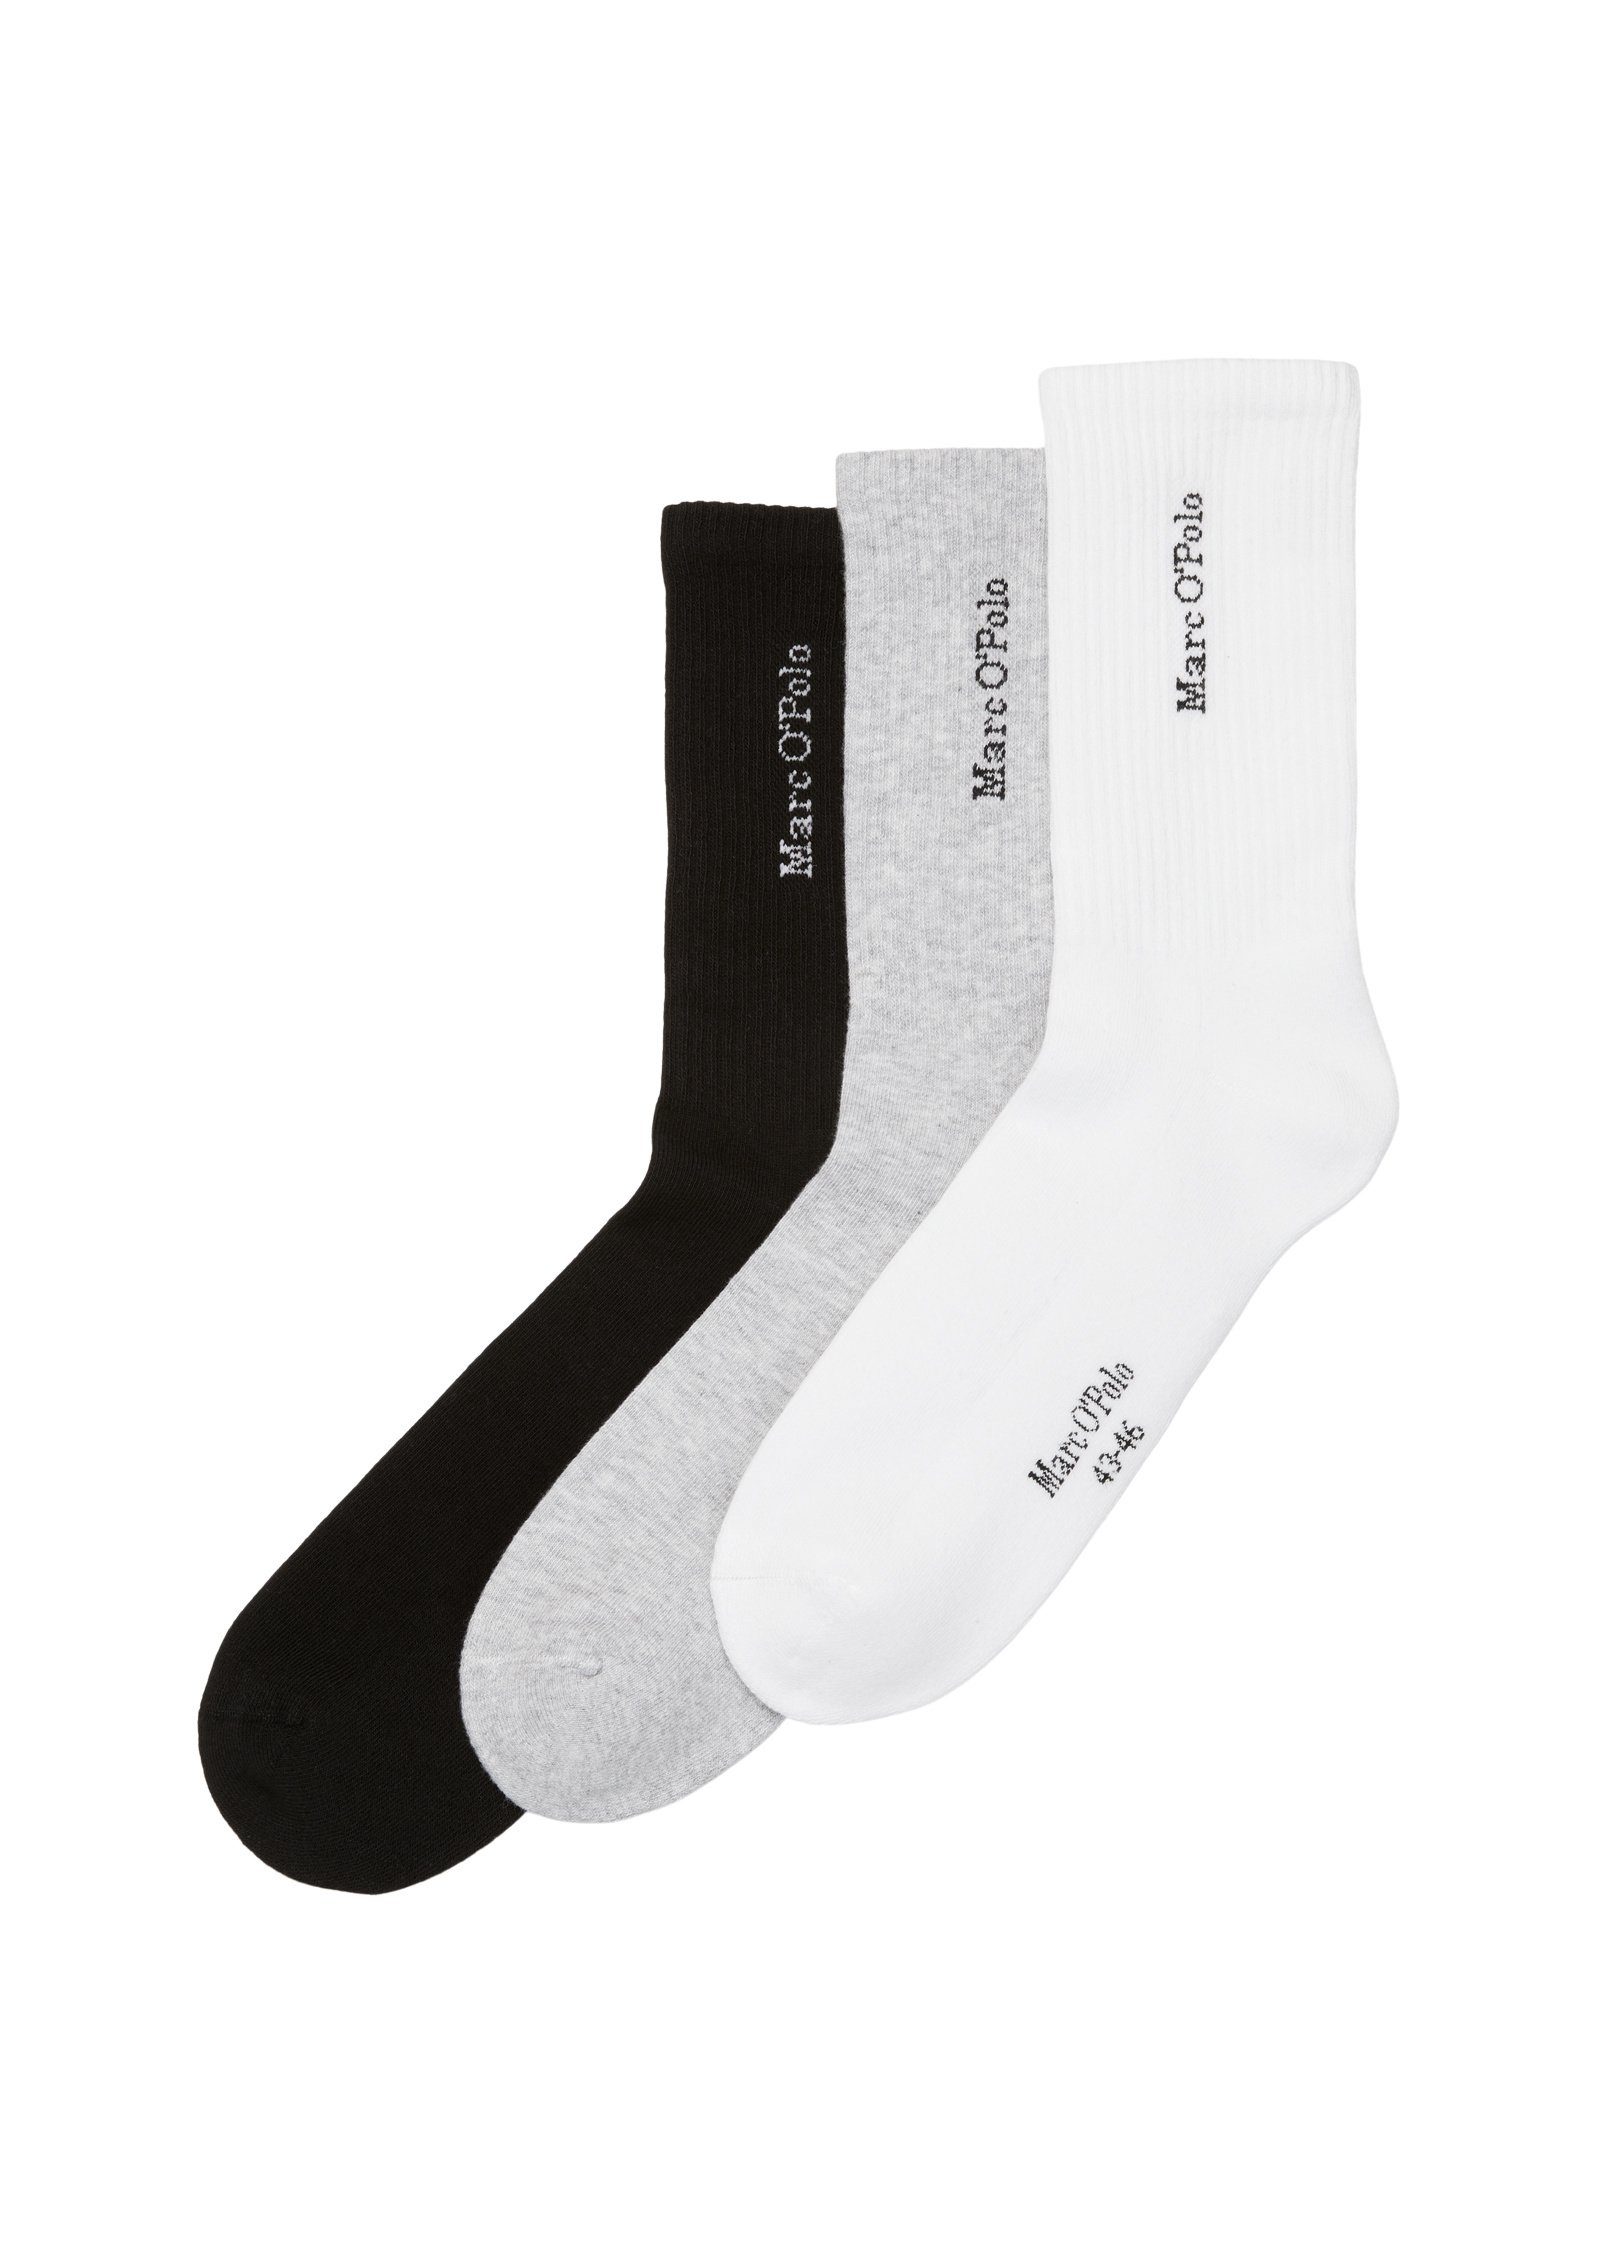 Marc O'Polo Socken im 6er Pack, Ripp-Socken im sportiven Stil